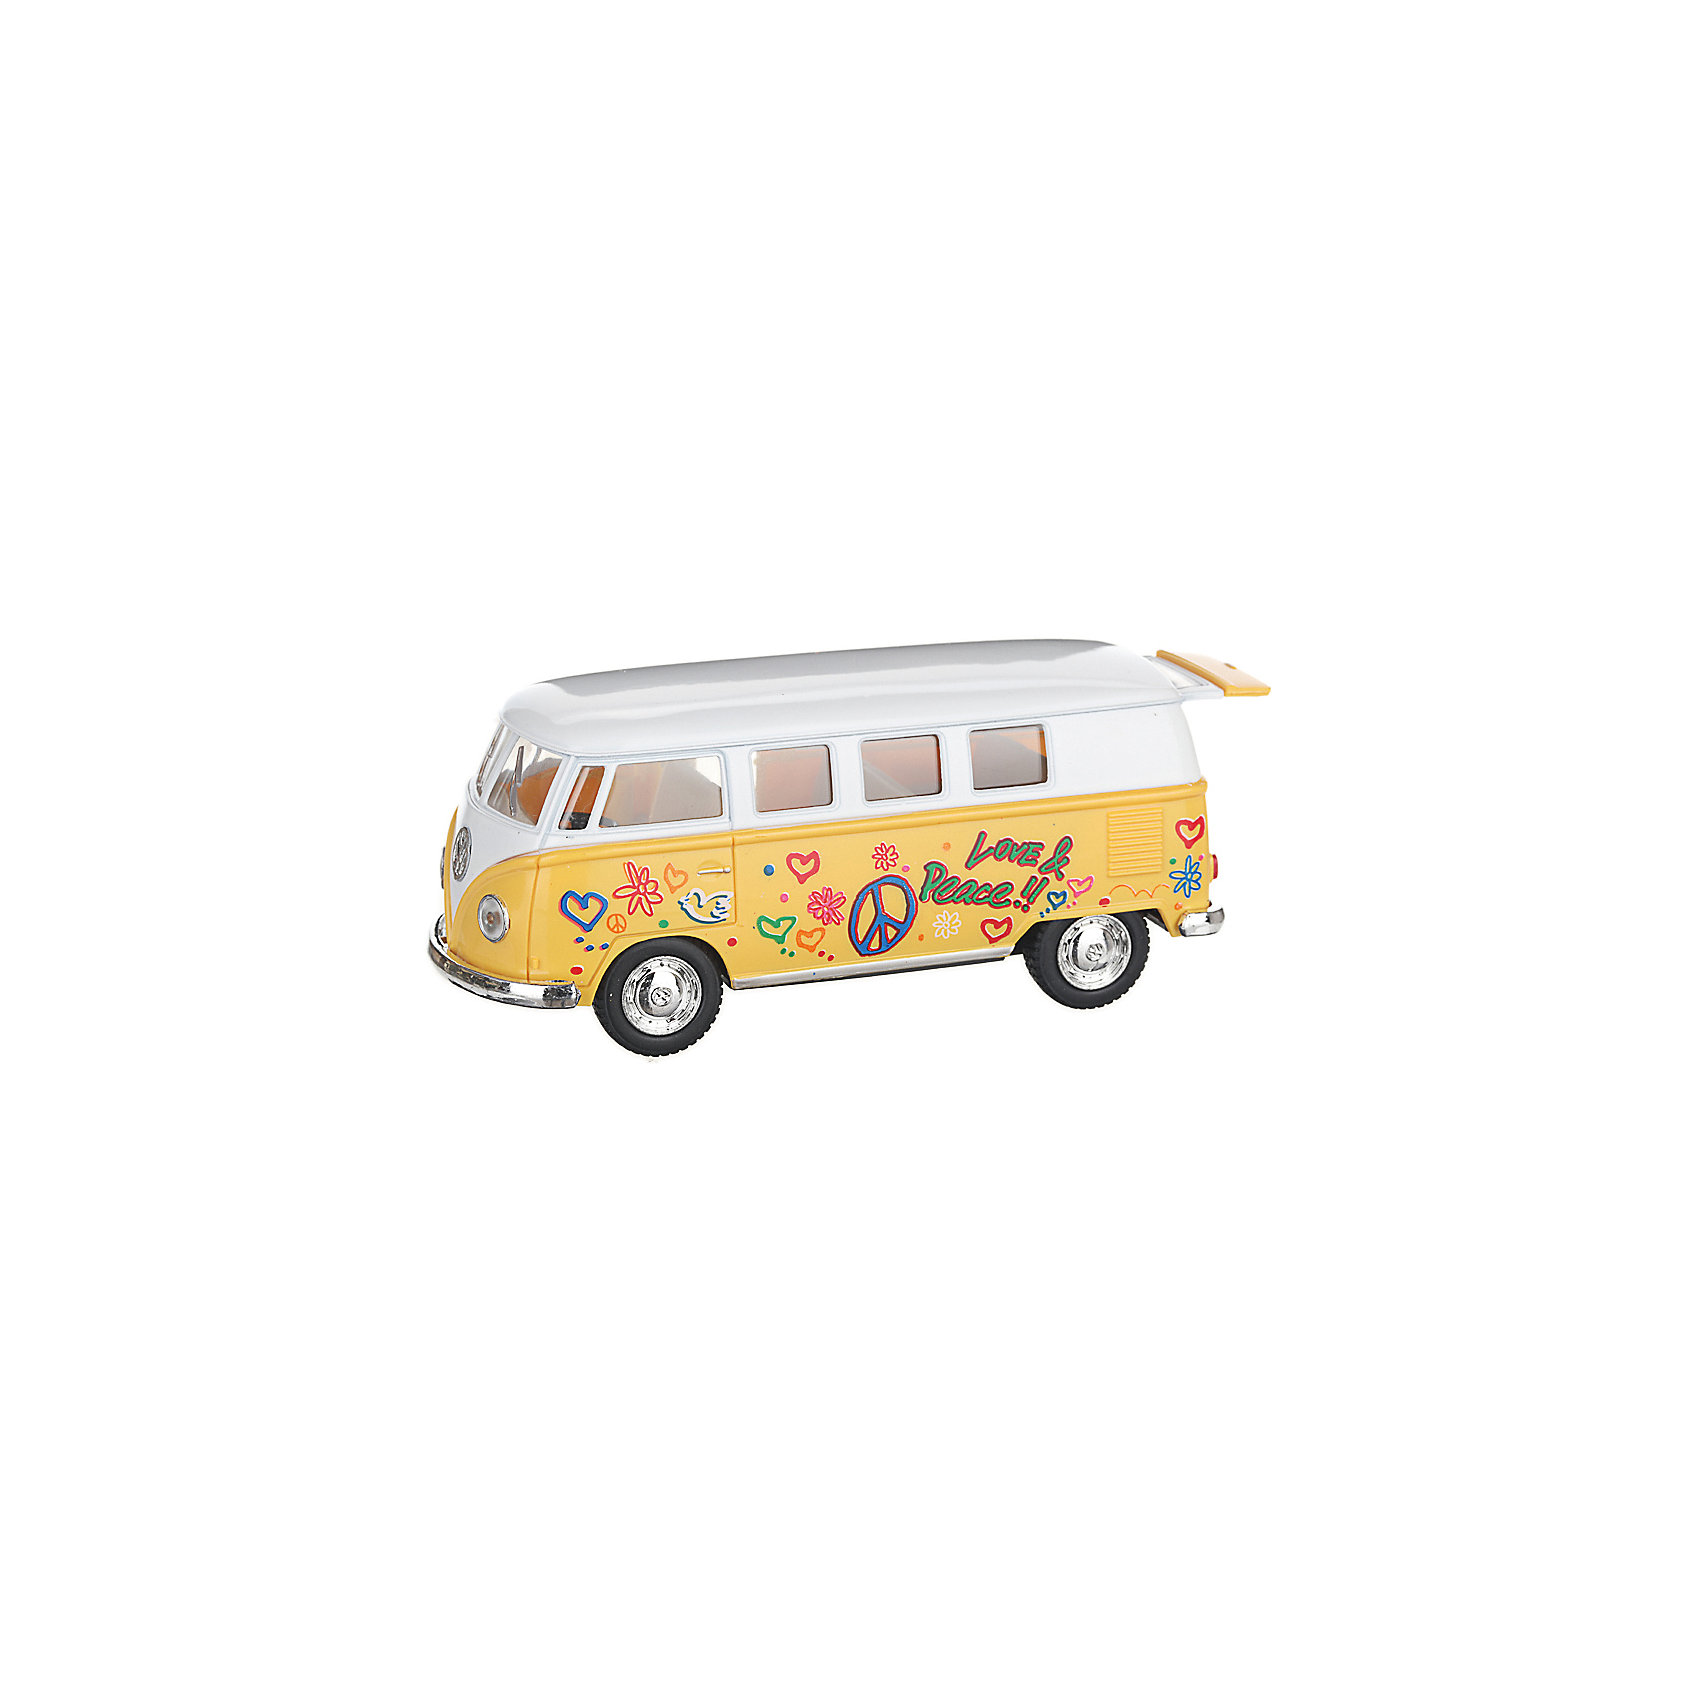 фото Металлический автобус Serinity Toys Volkswagen Classical раскрашенный, жёлтая